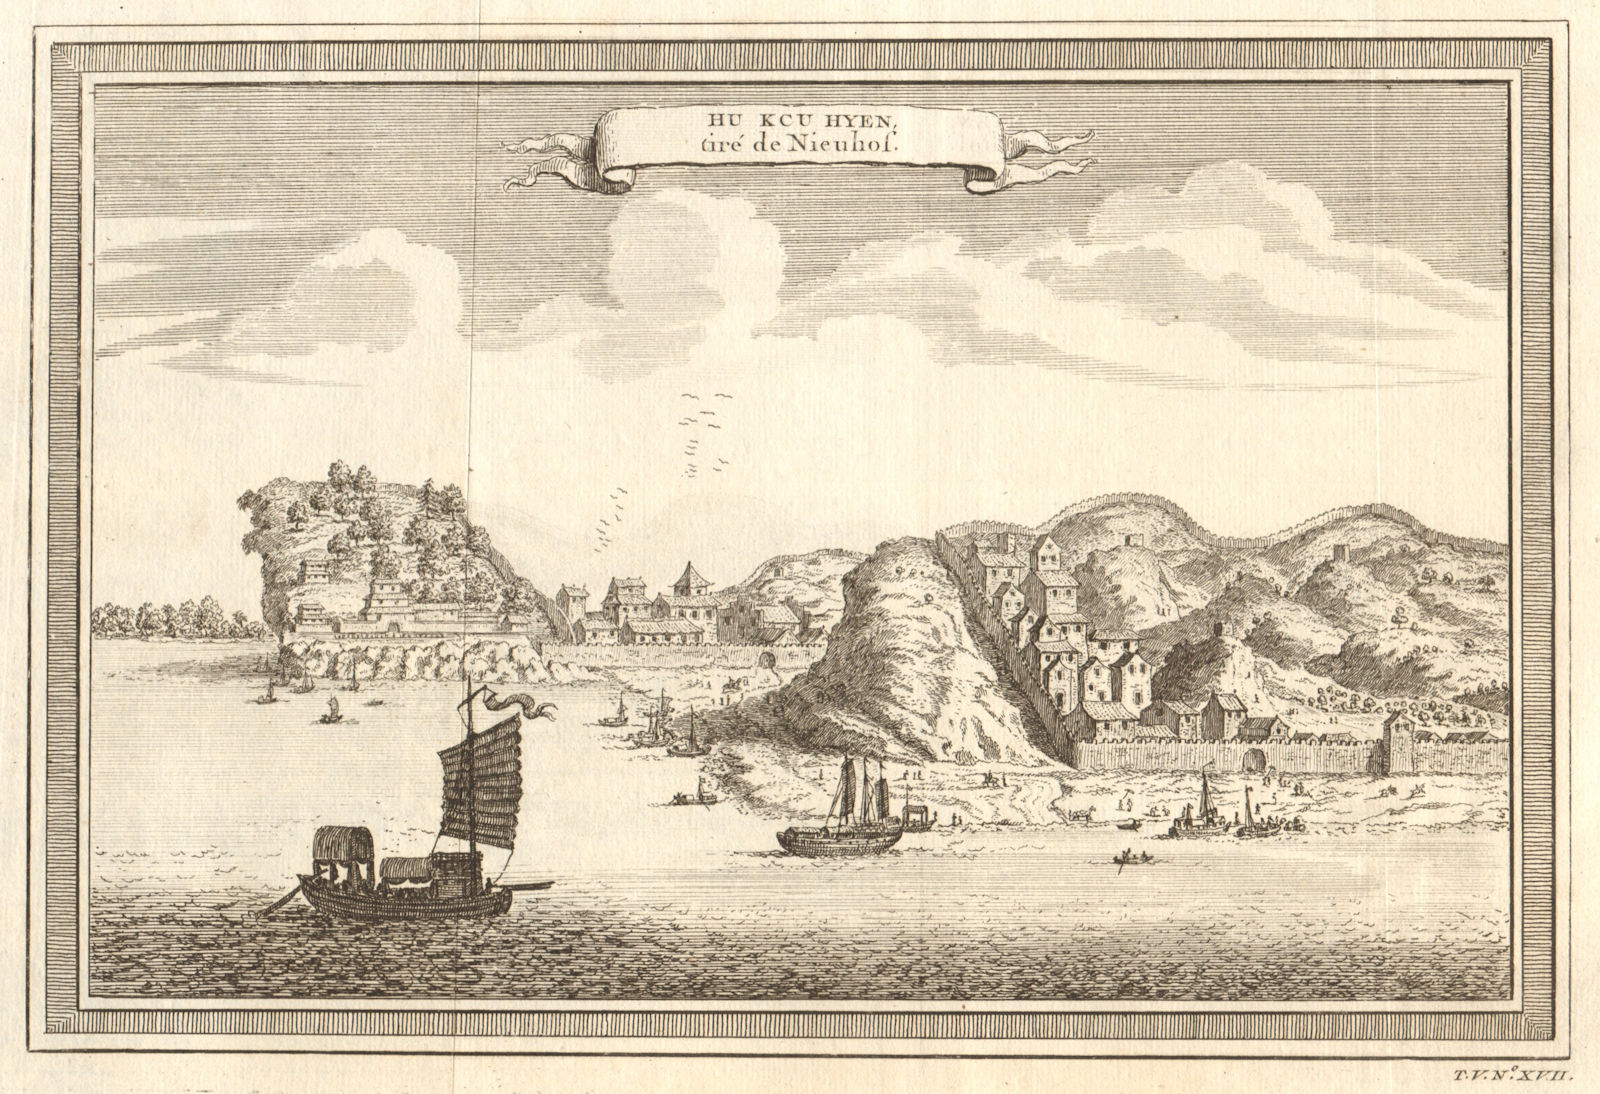 Associate Product 'Hu keu hyen'. View of Hukou, Jiangxi, China. Junks. Fortifications 1748 print